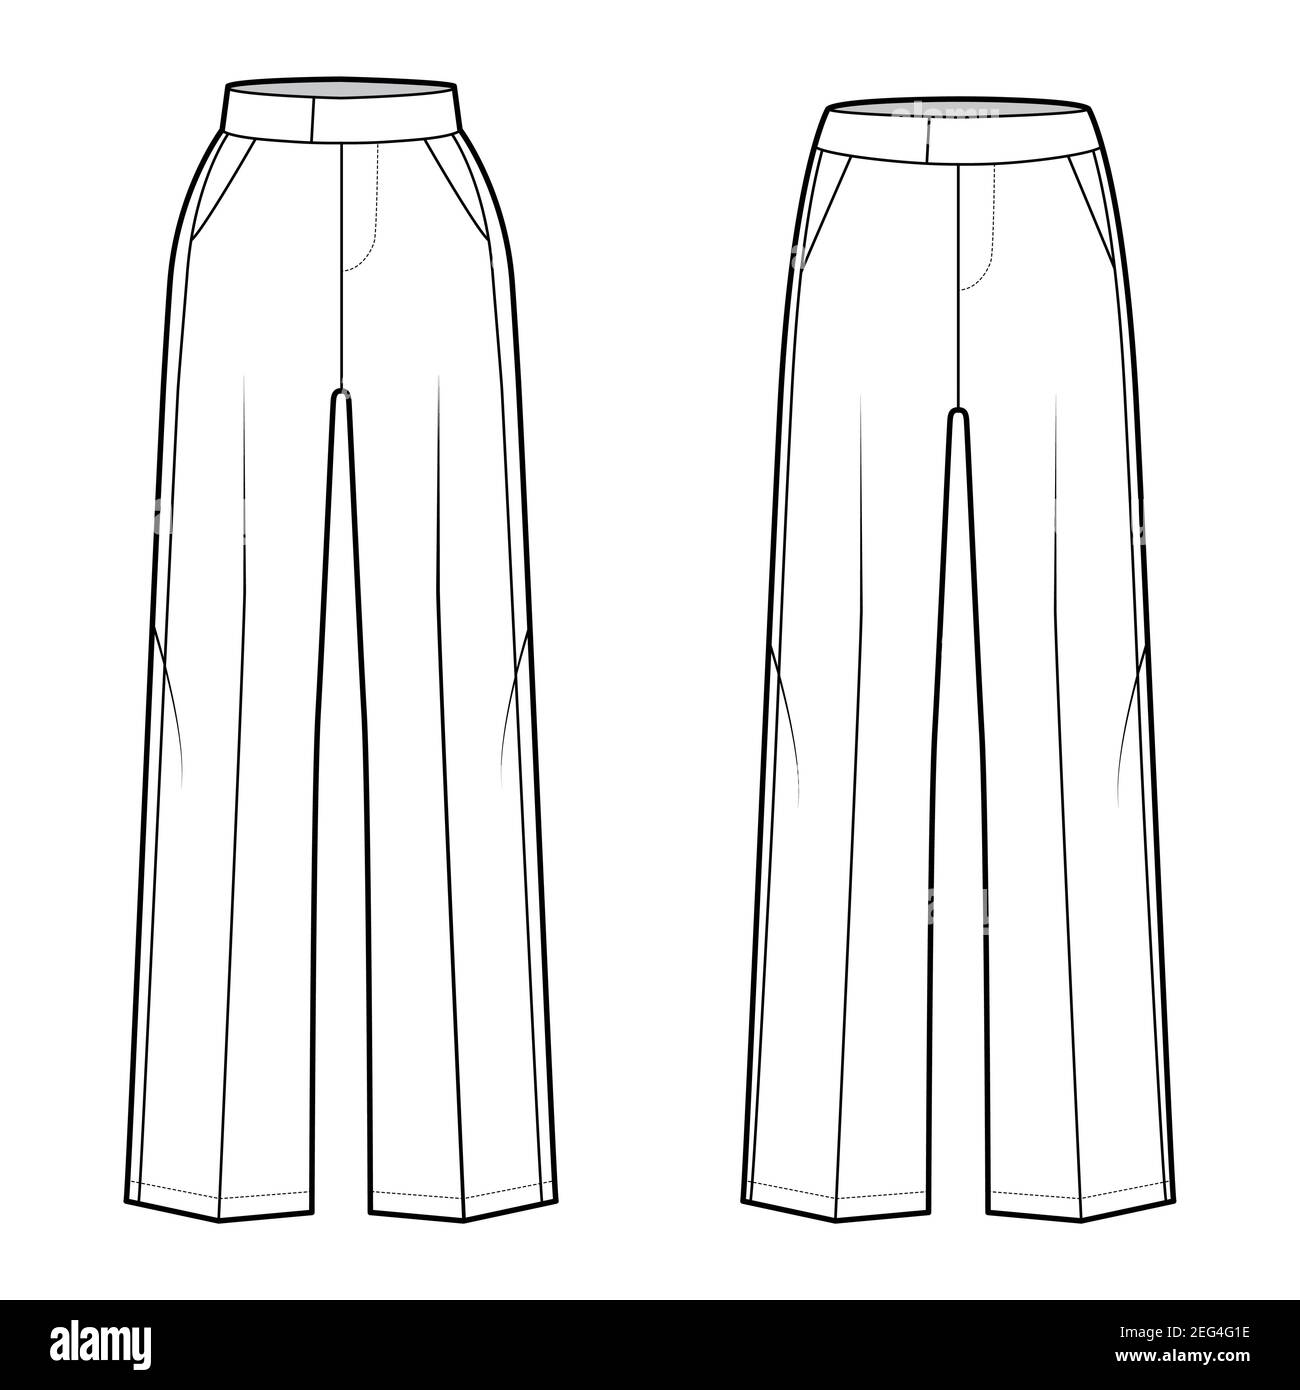 Ensemble de pantalons Tuxedo technique mode illustration avec taille  normale basse, taille, longueur, rayures satinées sur le côté. Pantalon  plat bas modèle de vêtement couleur blanche. Femmes, hommes unisex CAD  maquette Image